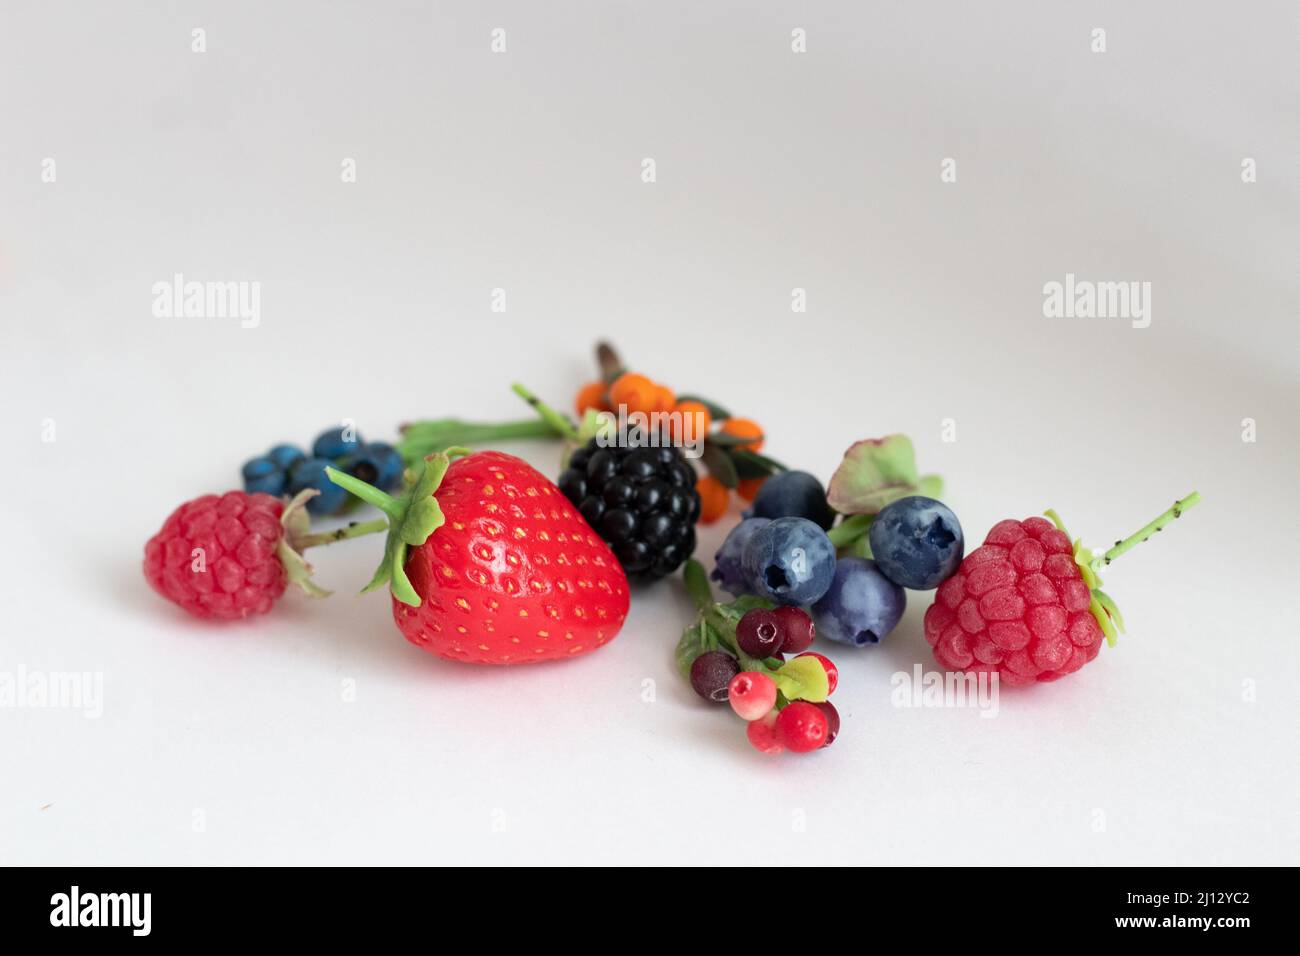 Figuras en miniatura de fresas, moras, frambuesas, arándanos, arándanos, arándanos y arándanos Foto de stock